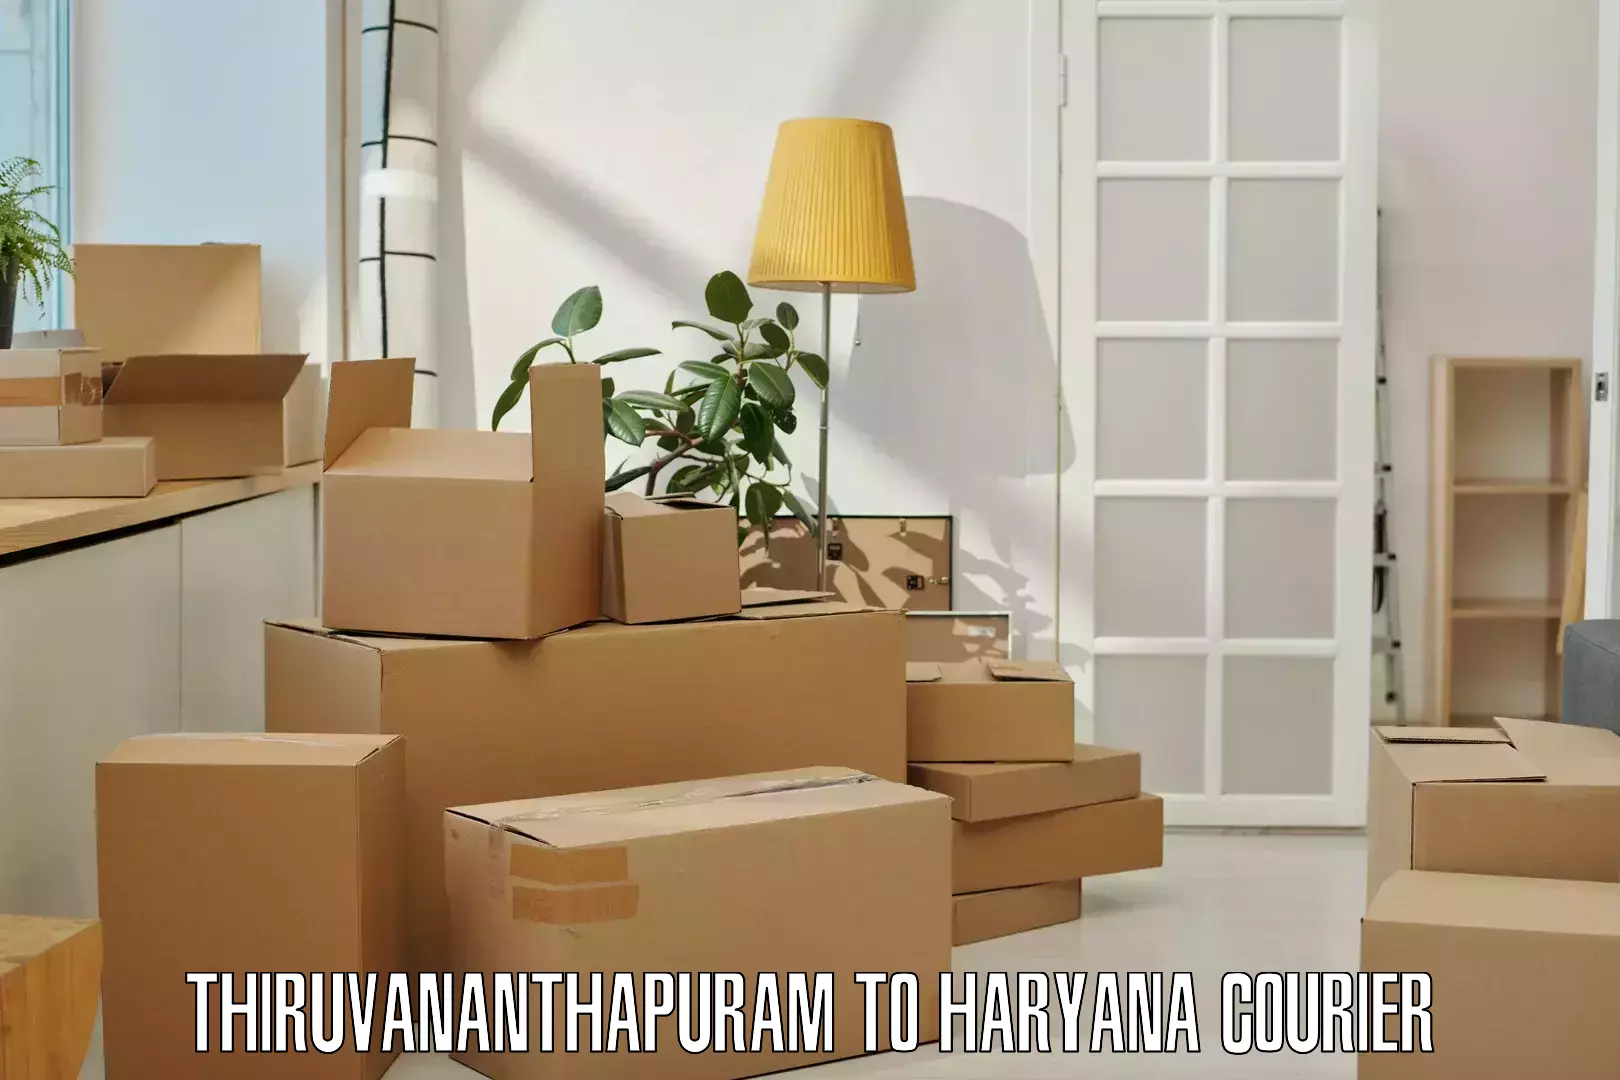 Doorstep delivery service in Thiruvananthapuram to Chirya